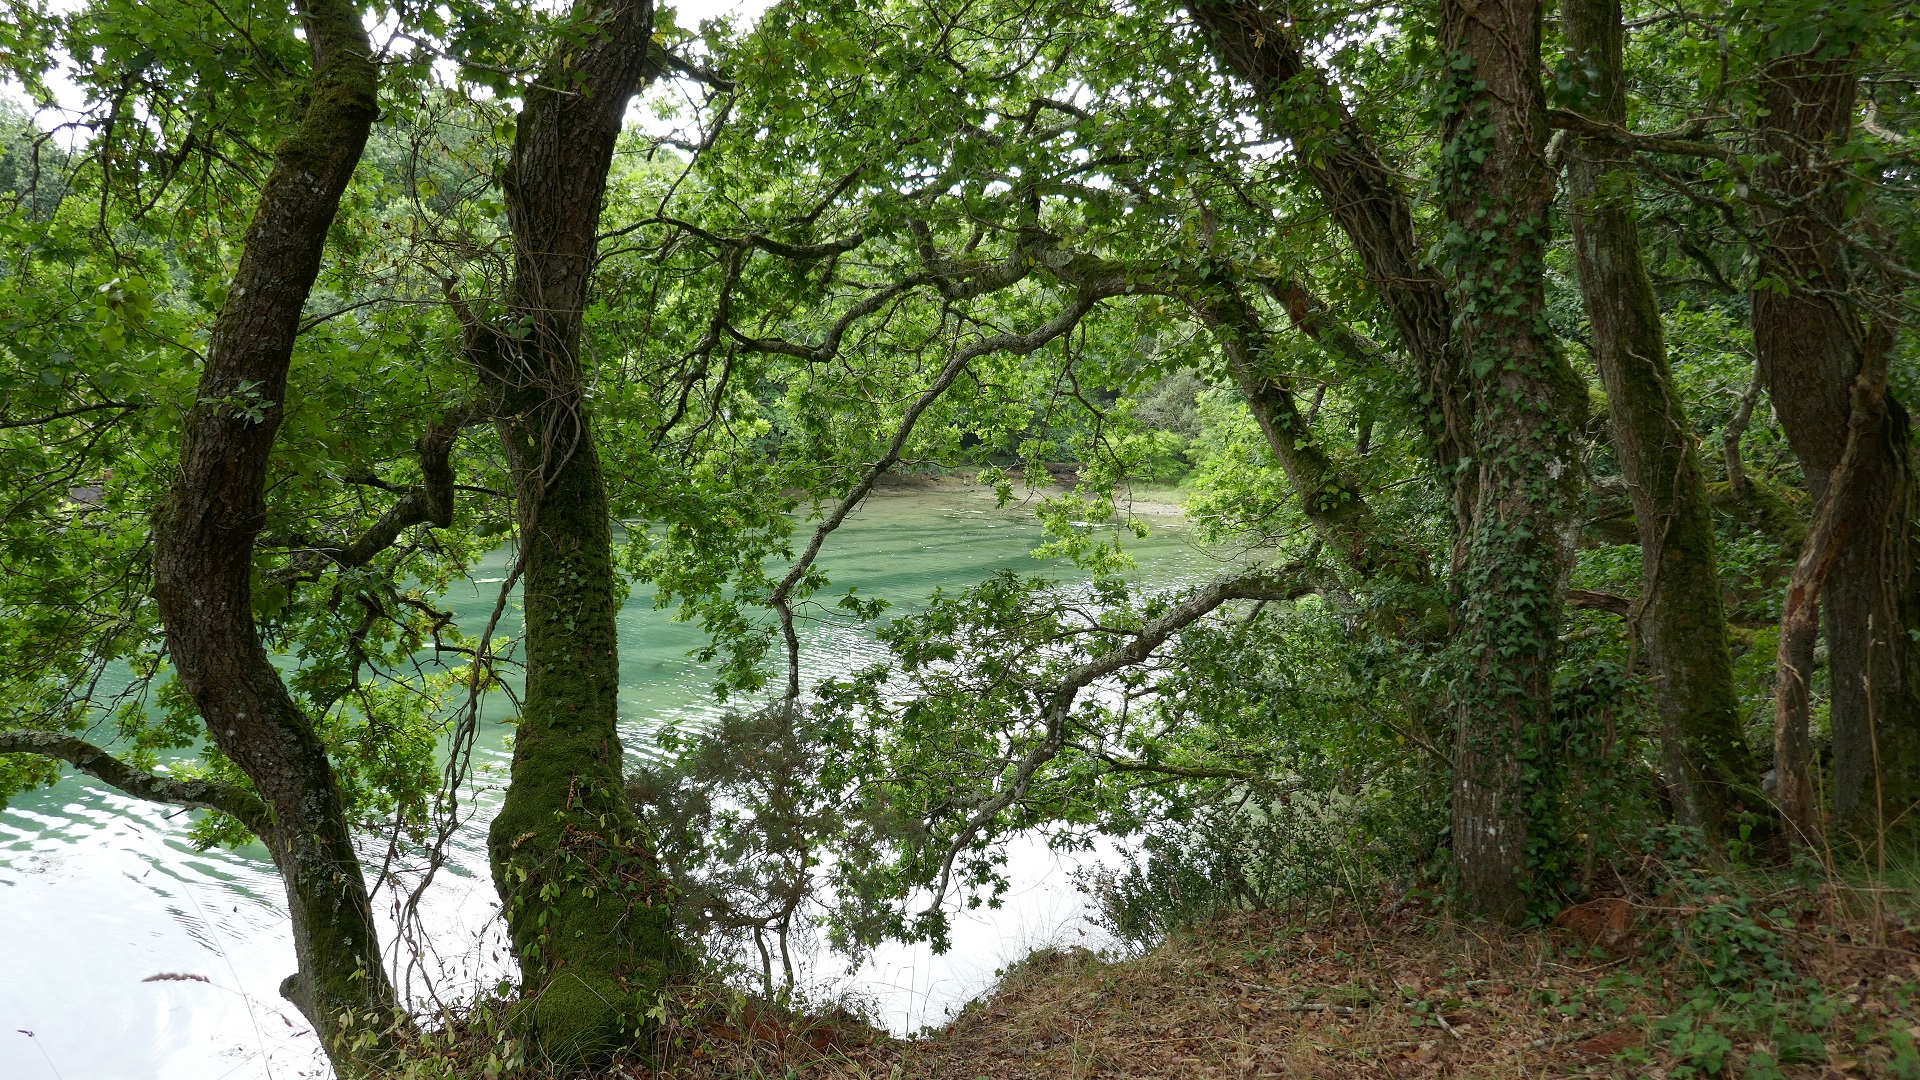 Aven river - Pouldon creek